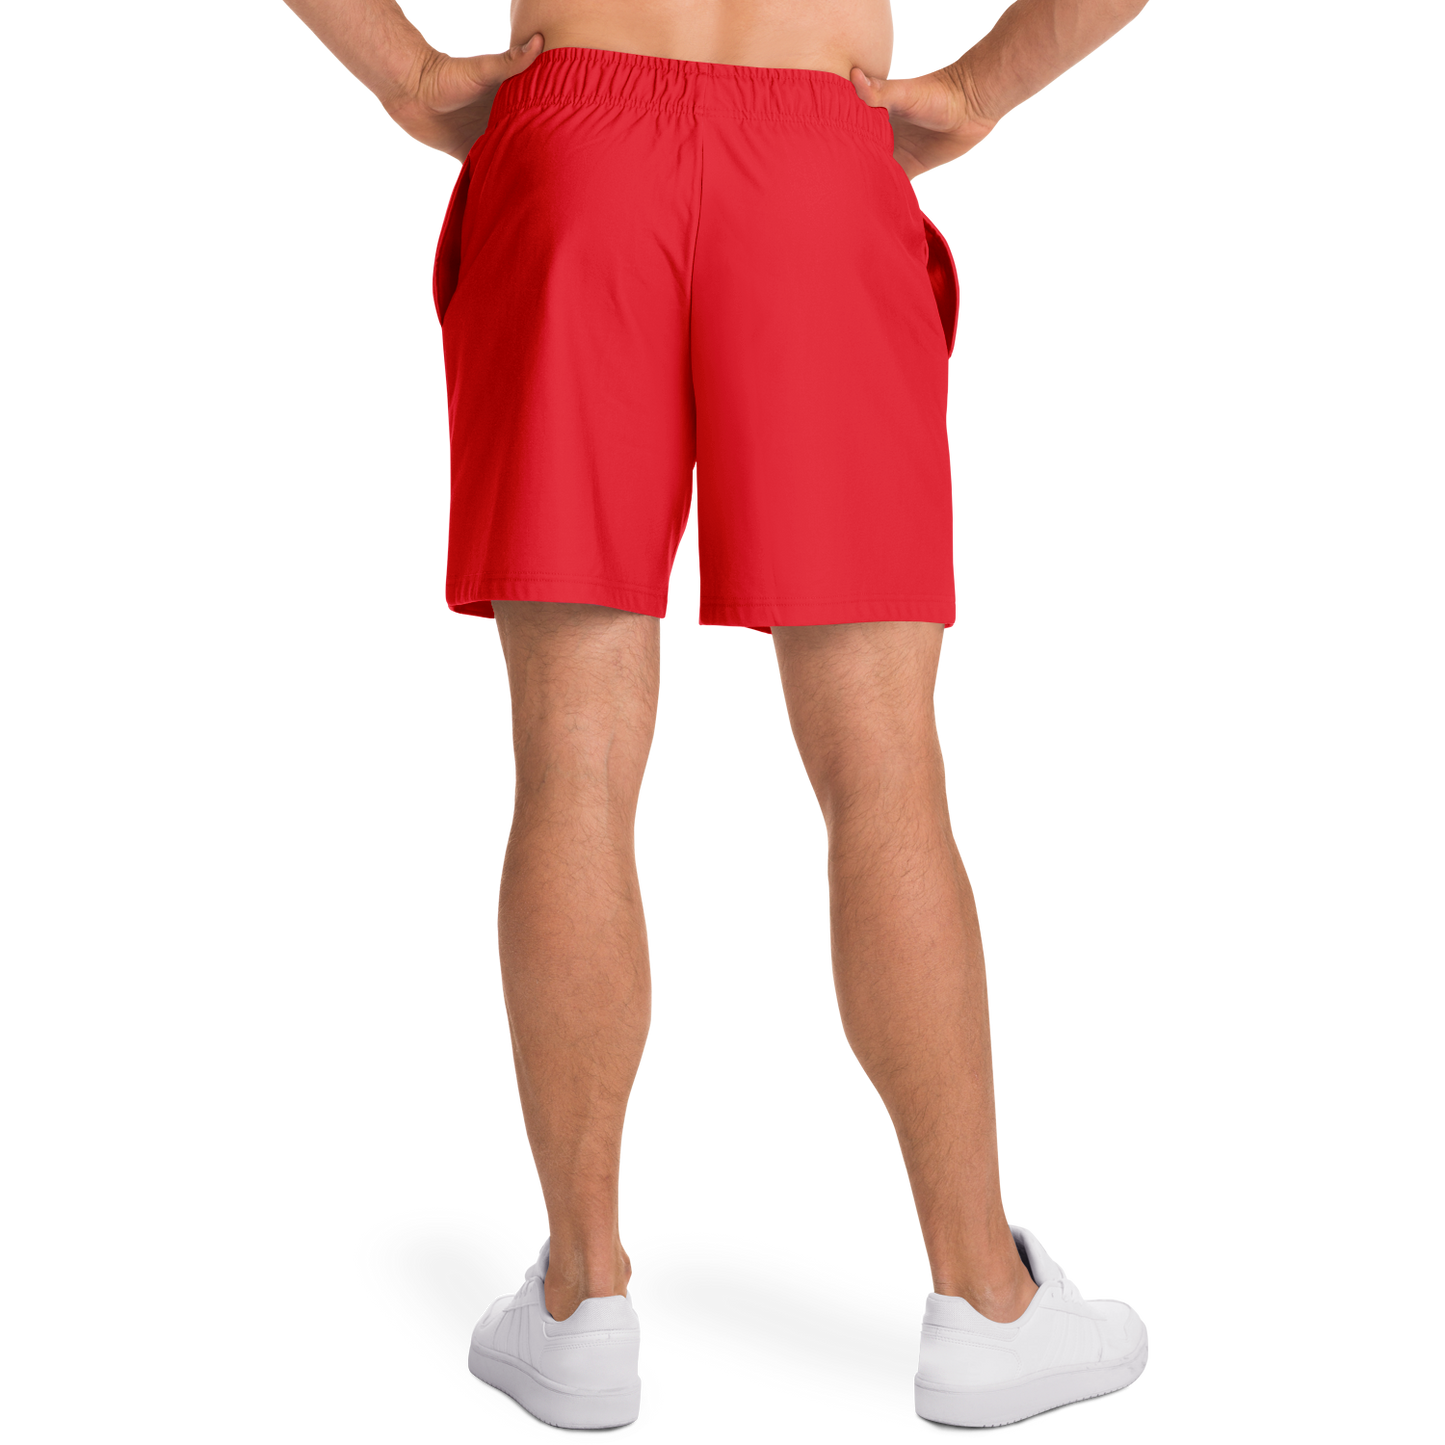 Philadelphia Men's Red Shorts